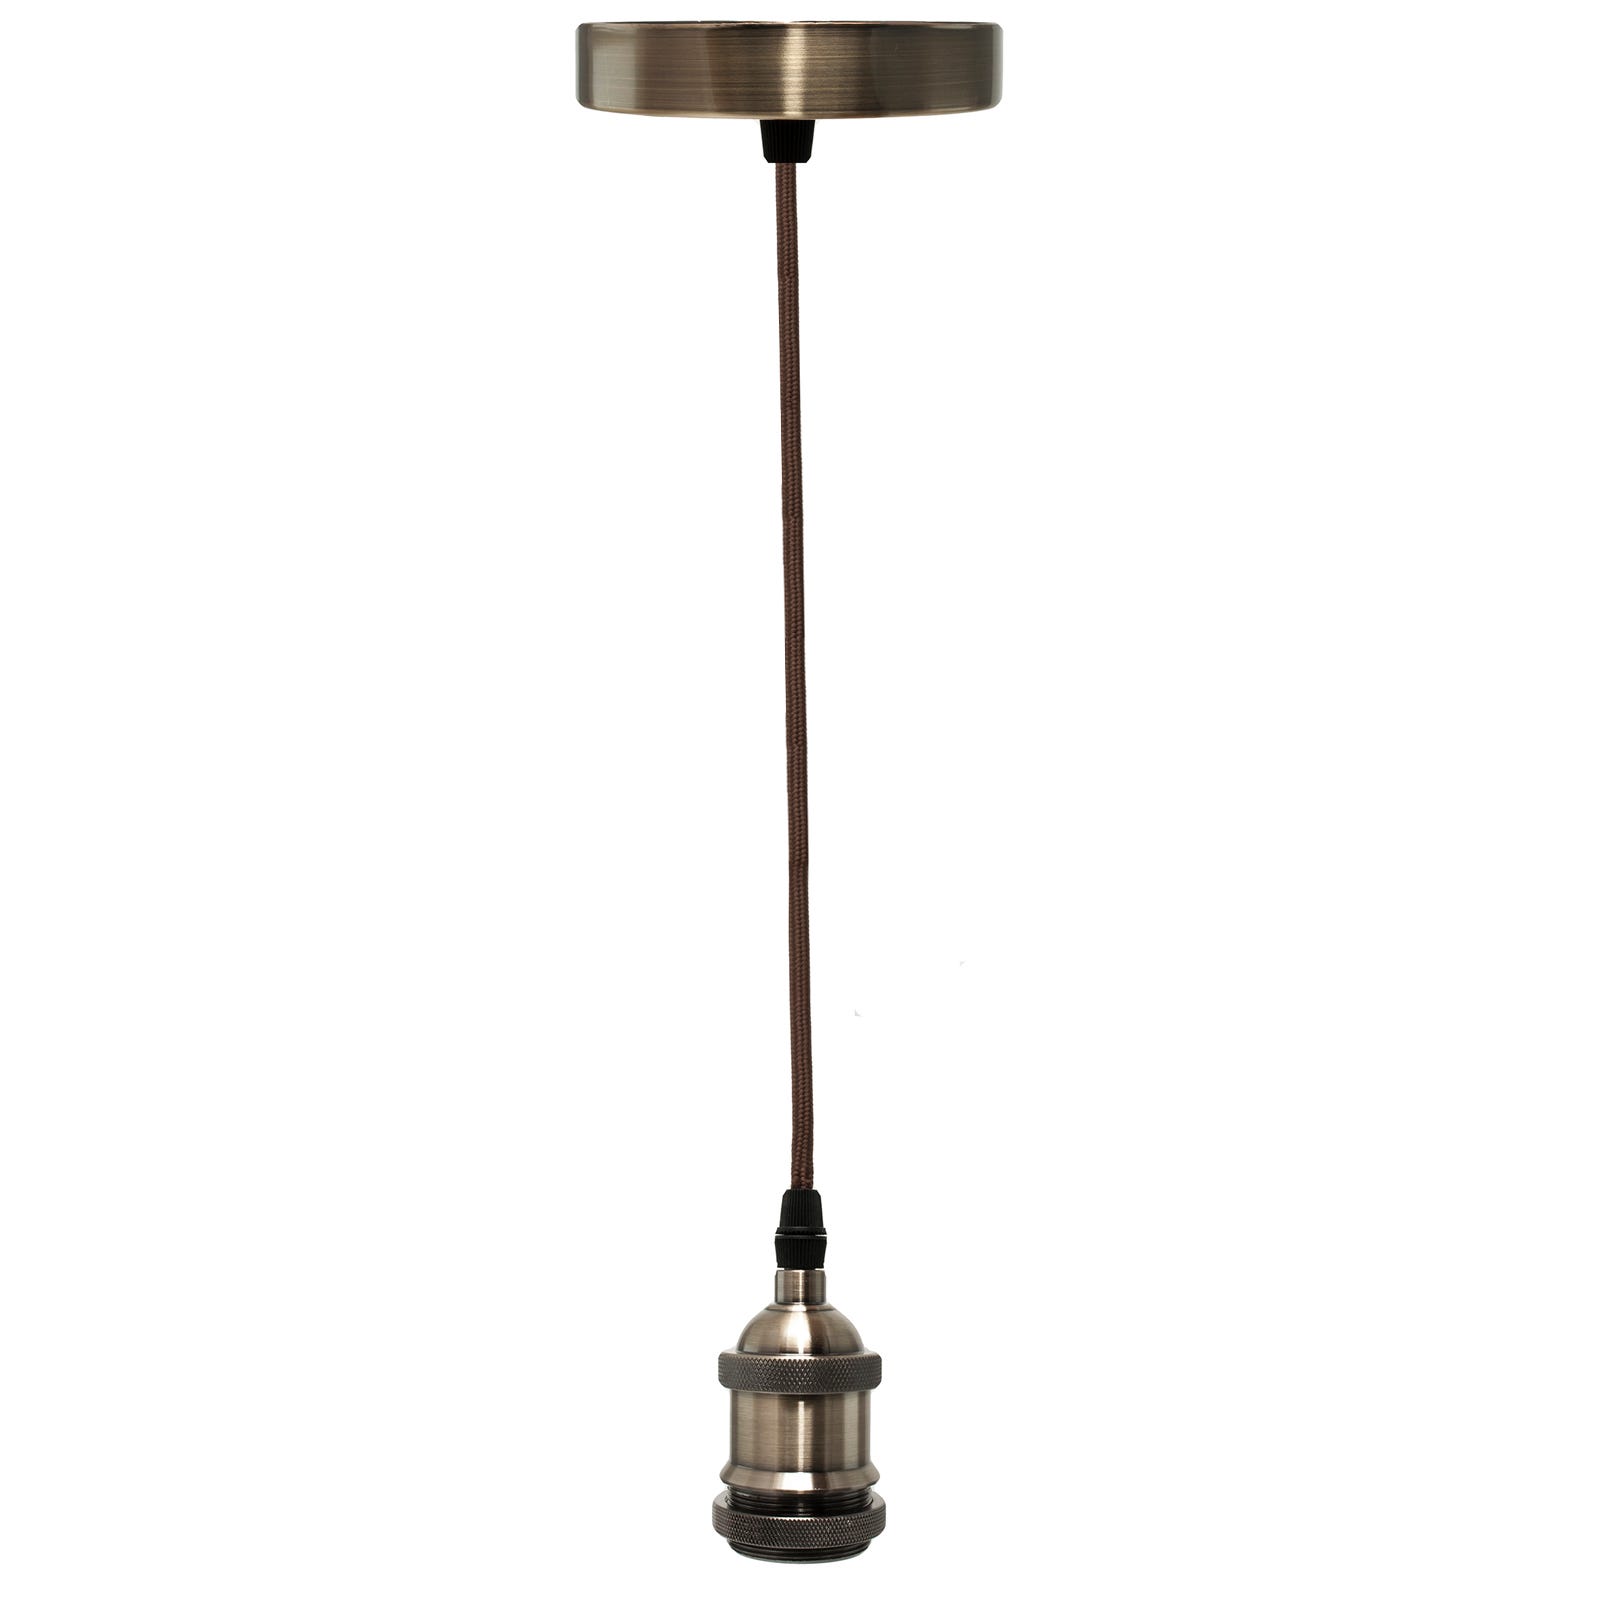 Portalampada vintage lampada vetro E27 LED pendente luce decorativa pub  pizzerie taverne 230V COLORE BRONZO